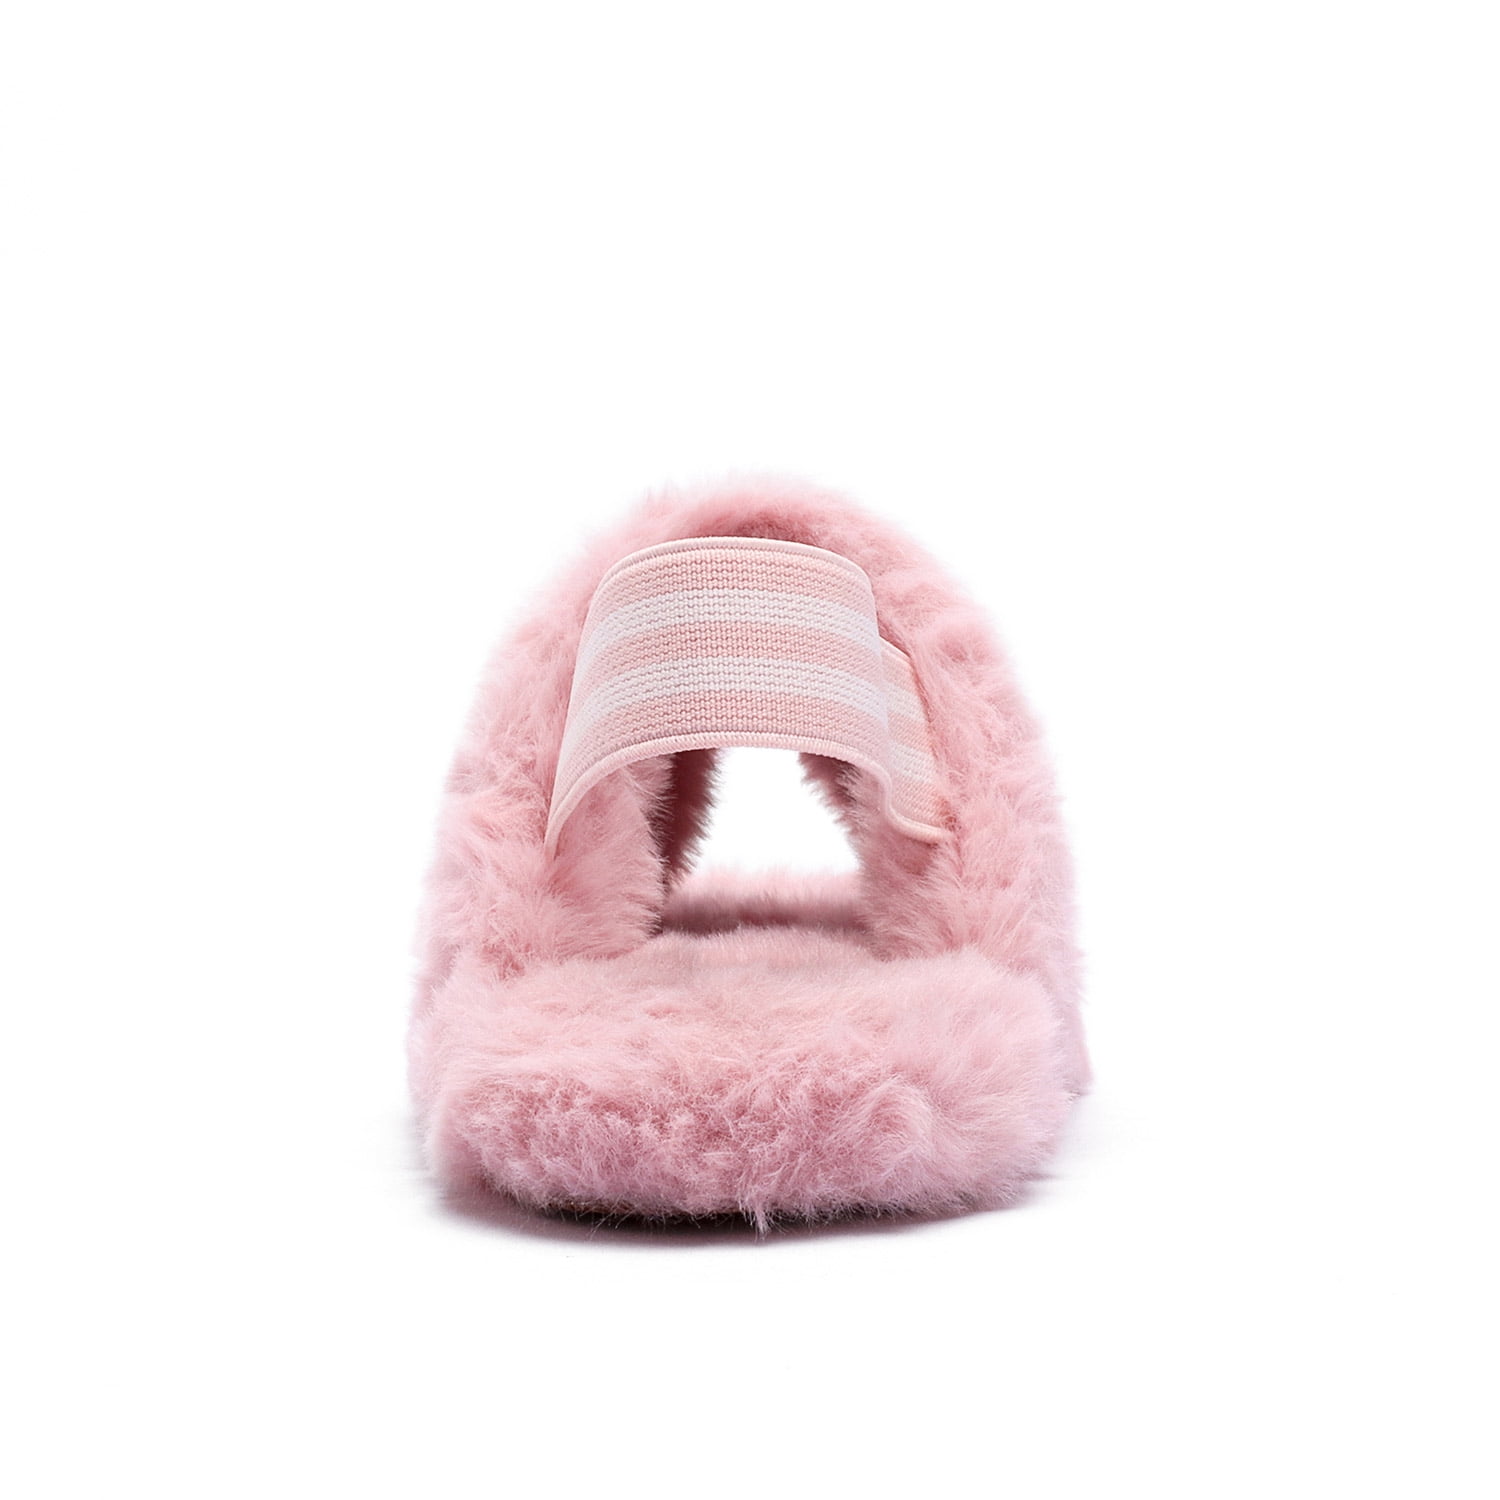 Zoolar Girls Fluffy Slippers Kids Fuzzy Slippers Slide Sandals Leopard Plush Open Toe Slip on House Bedroom Slippers